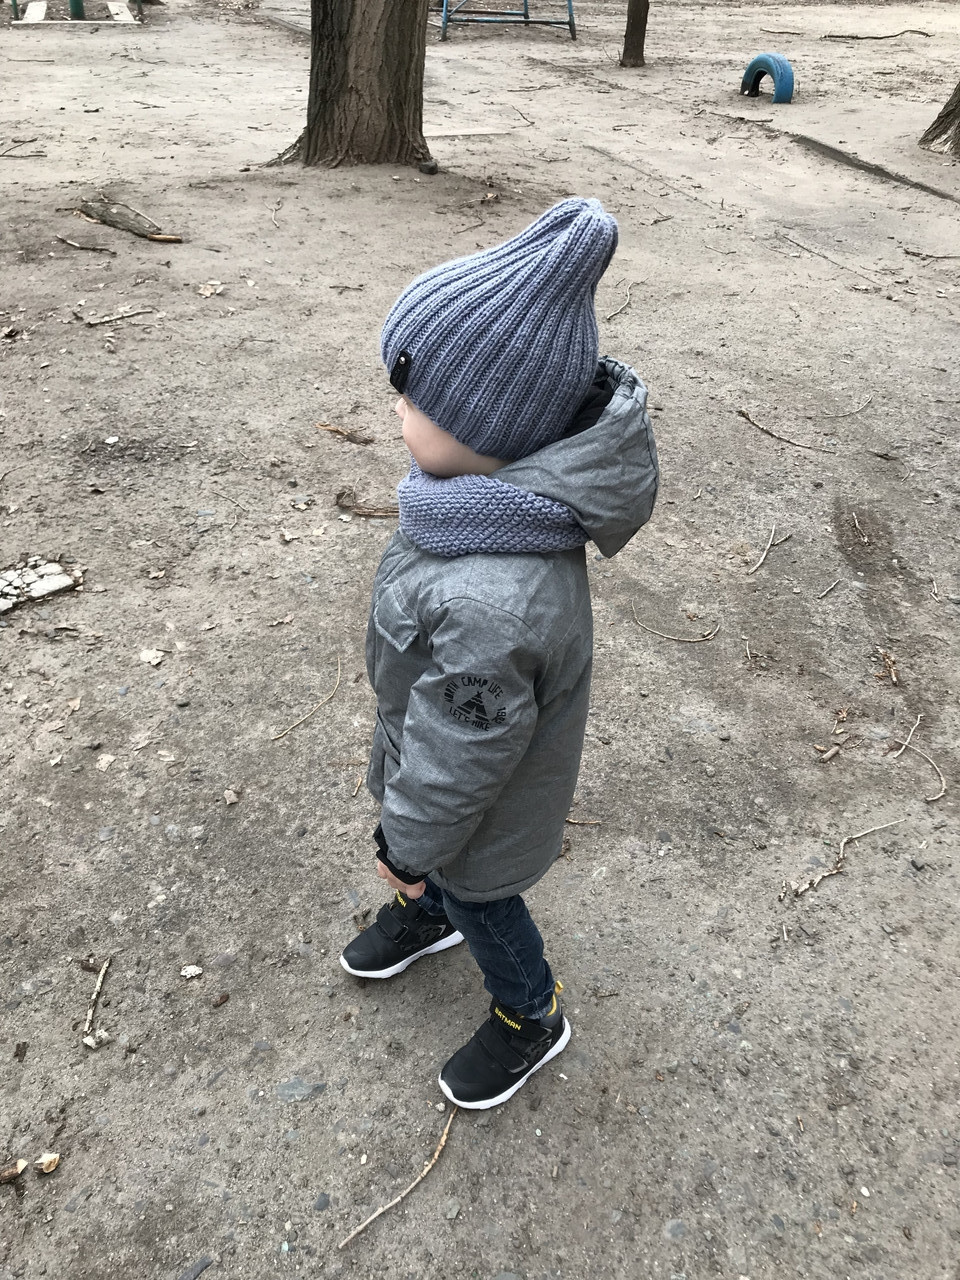 Демісезонний дитячий в'язаний набір шапочка та снуд ручної роботи для хлопчика.